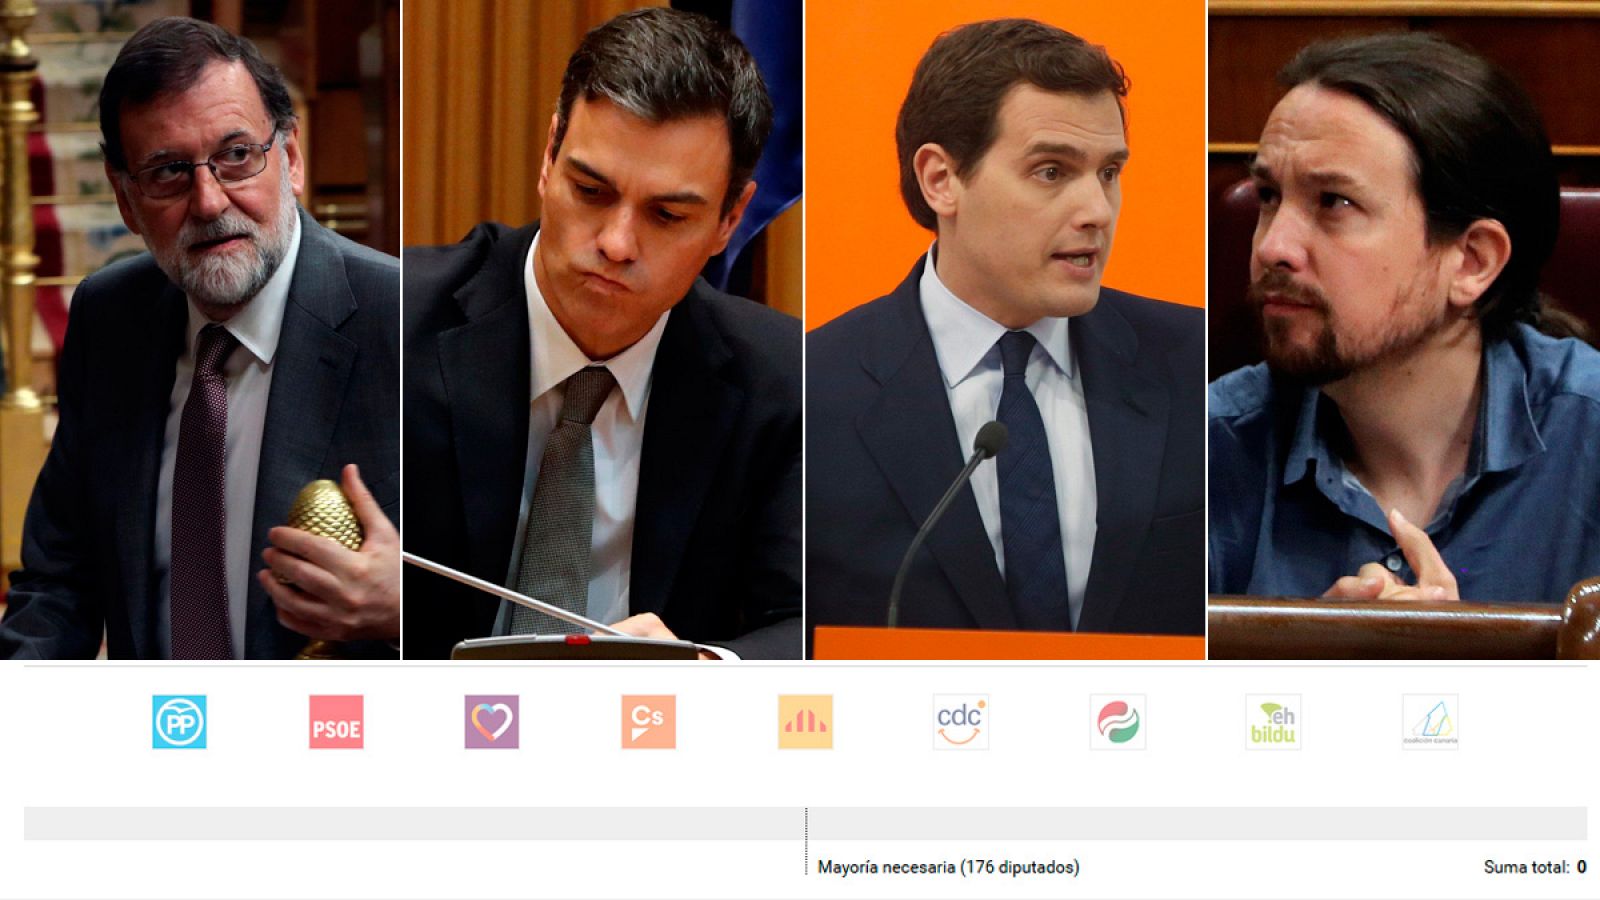 Calculadora de votos para la moción de censura del PSOE contra Mariano Rajoy